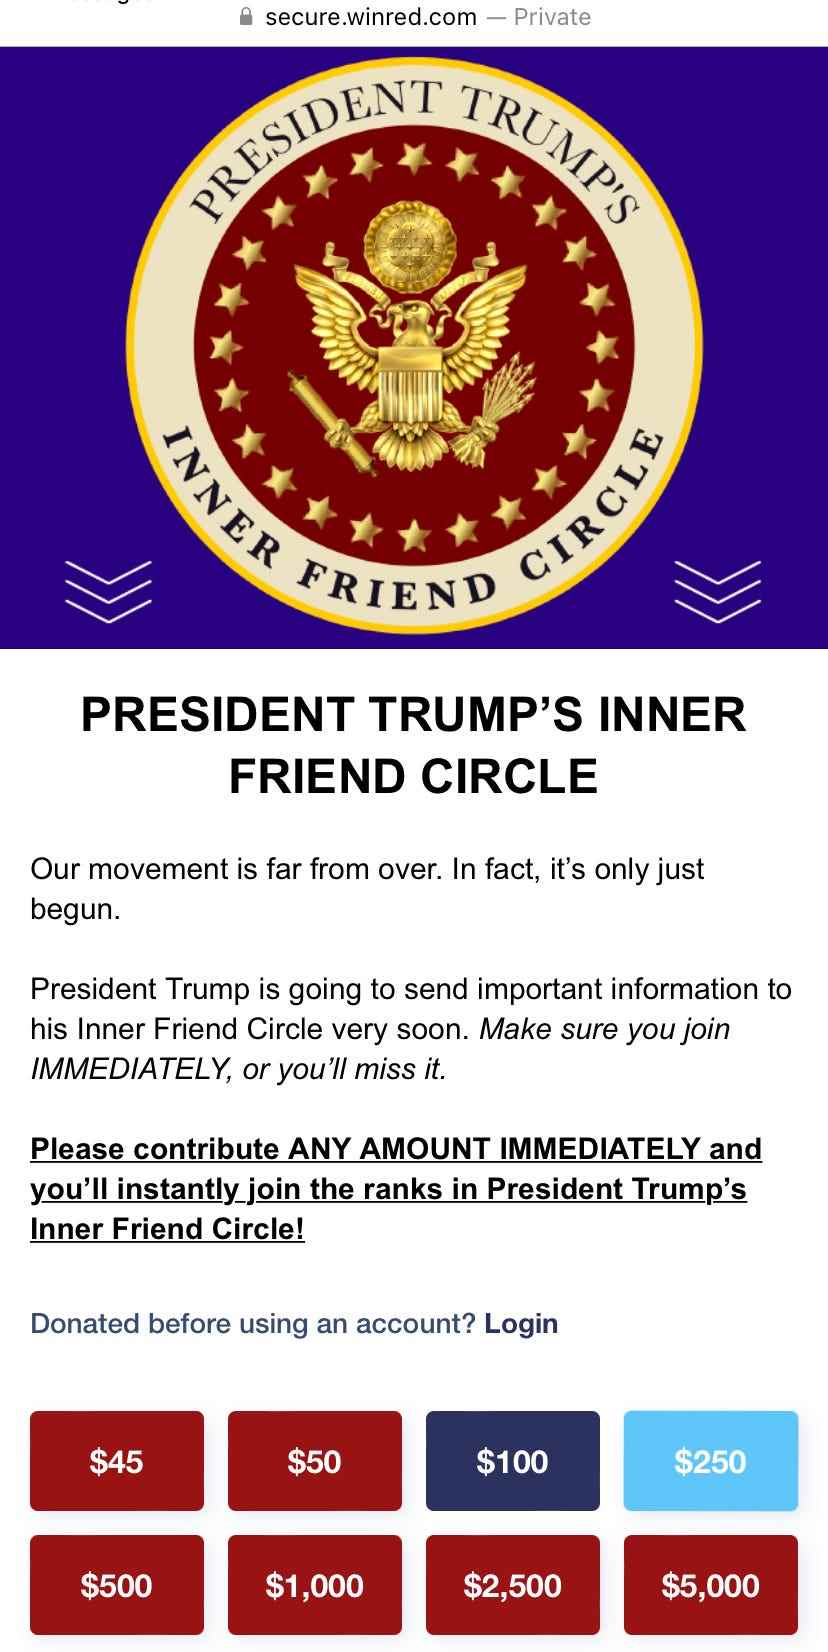 Der innere Freundeskreis von Präsident Trump